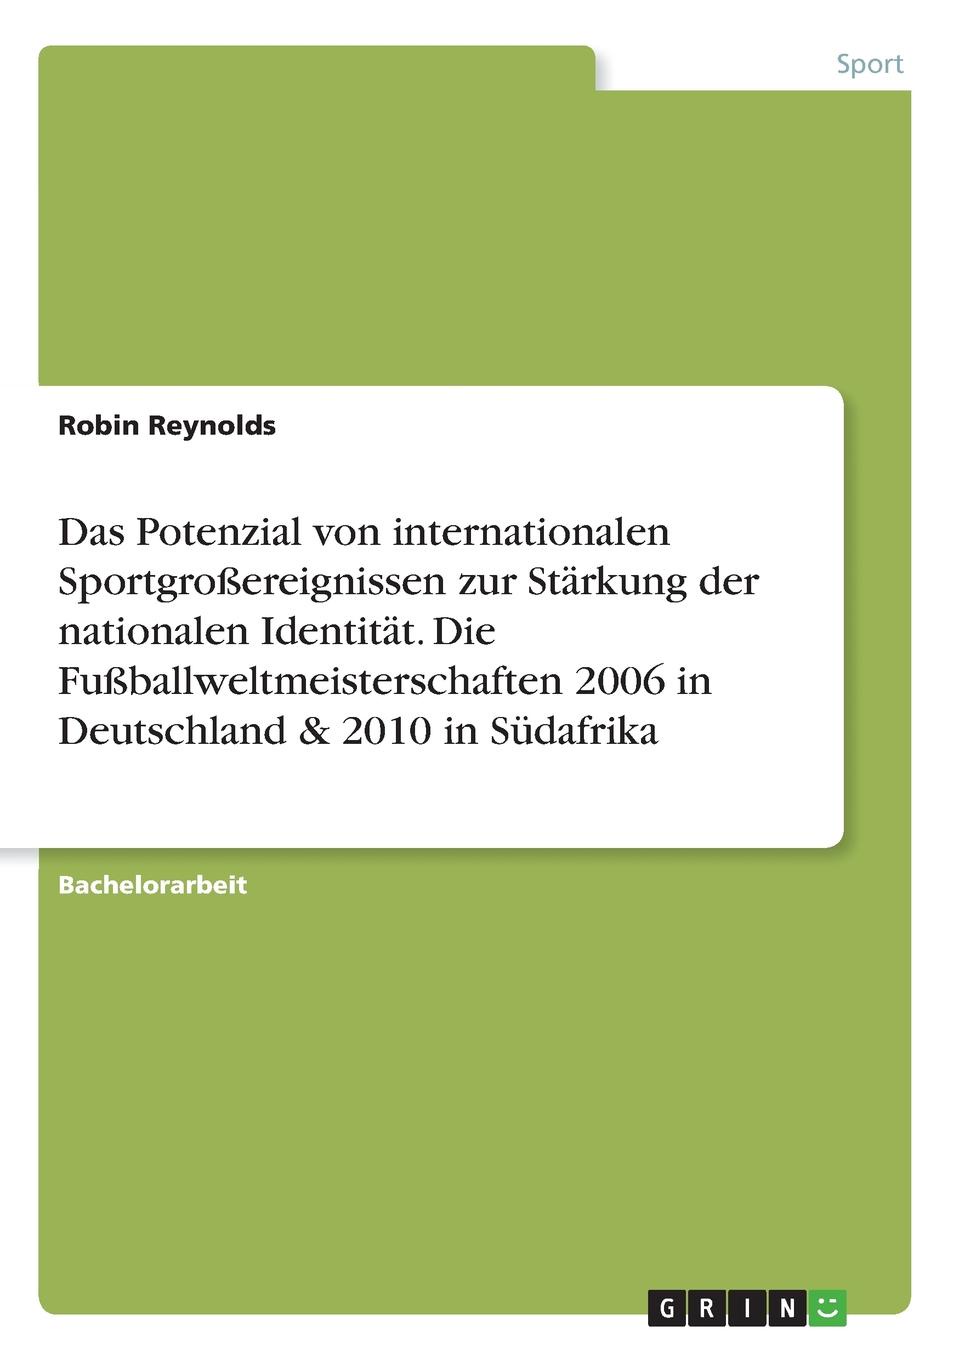 Das Potenzial von internationalen Sportgrossereignissen zur Starkung der nationalen Identitat. Die Fussballweltmeisterschaften 2006 in Deutschland . 2010 in Sudafrika